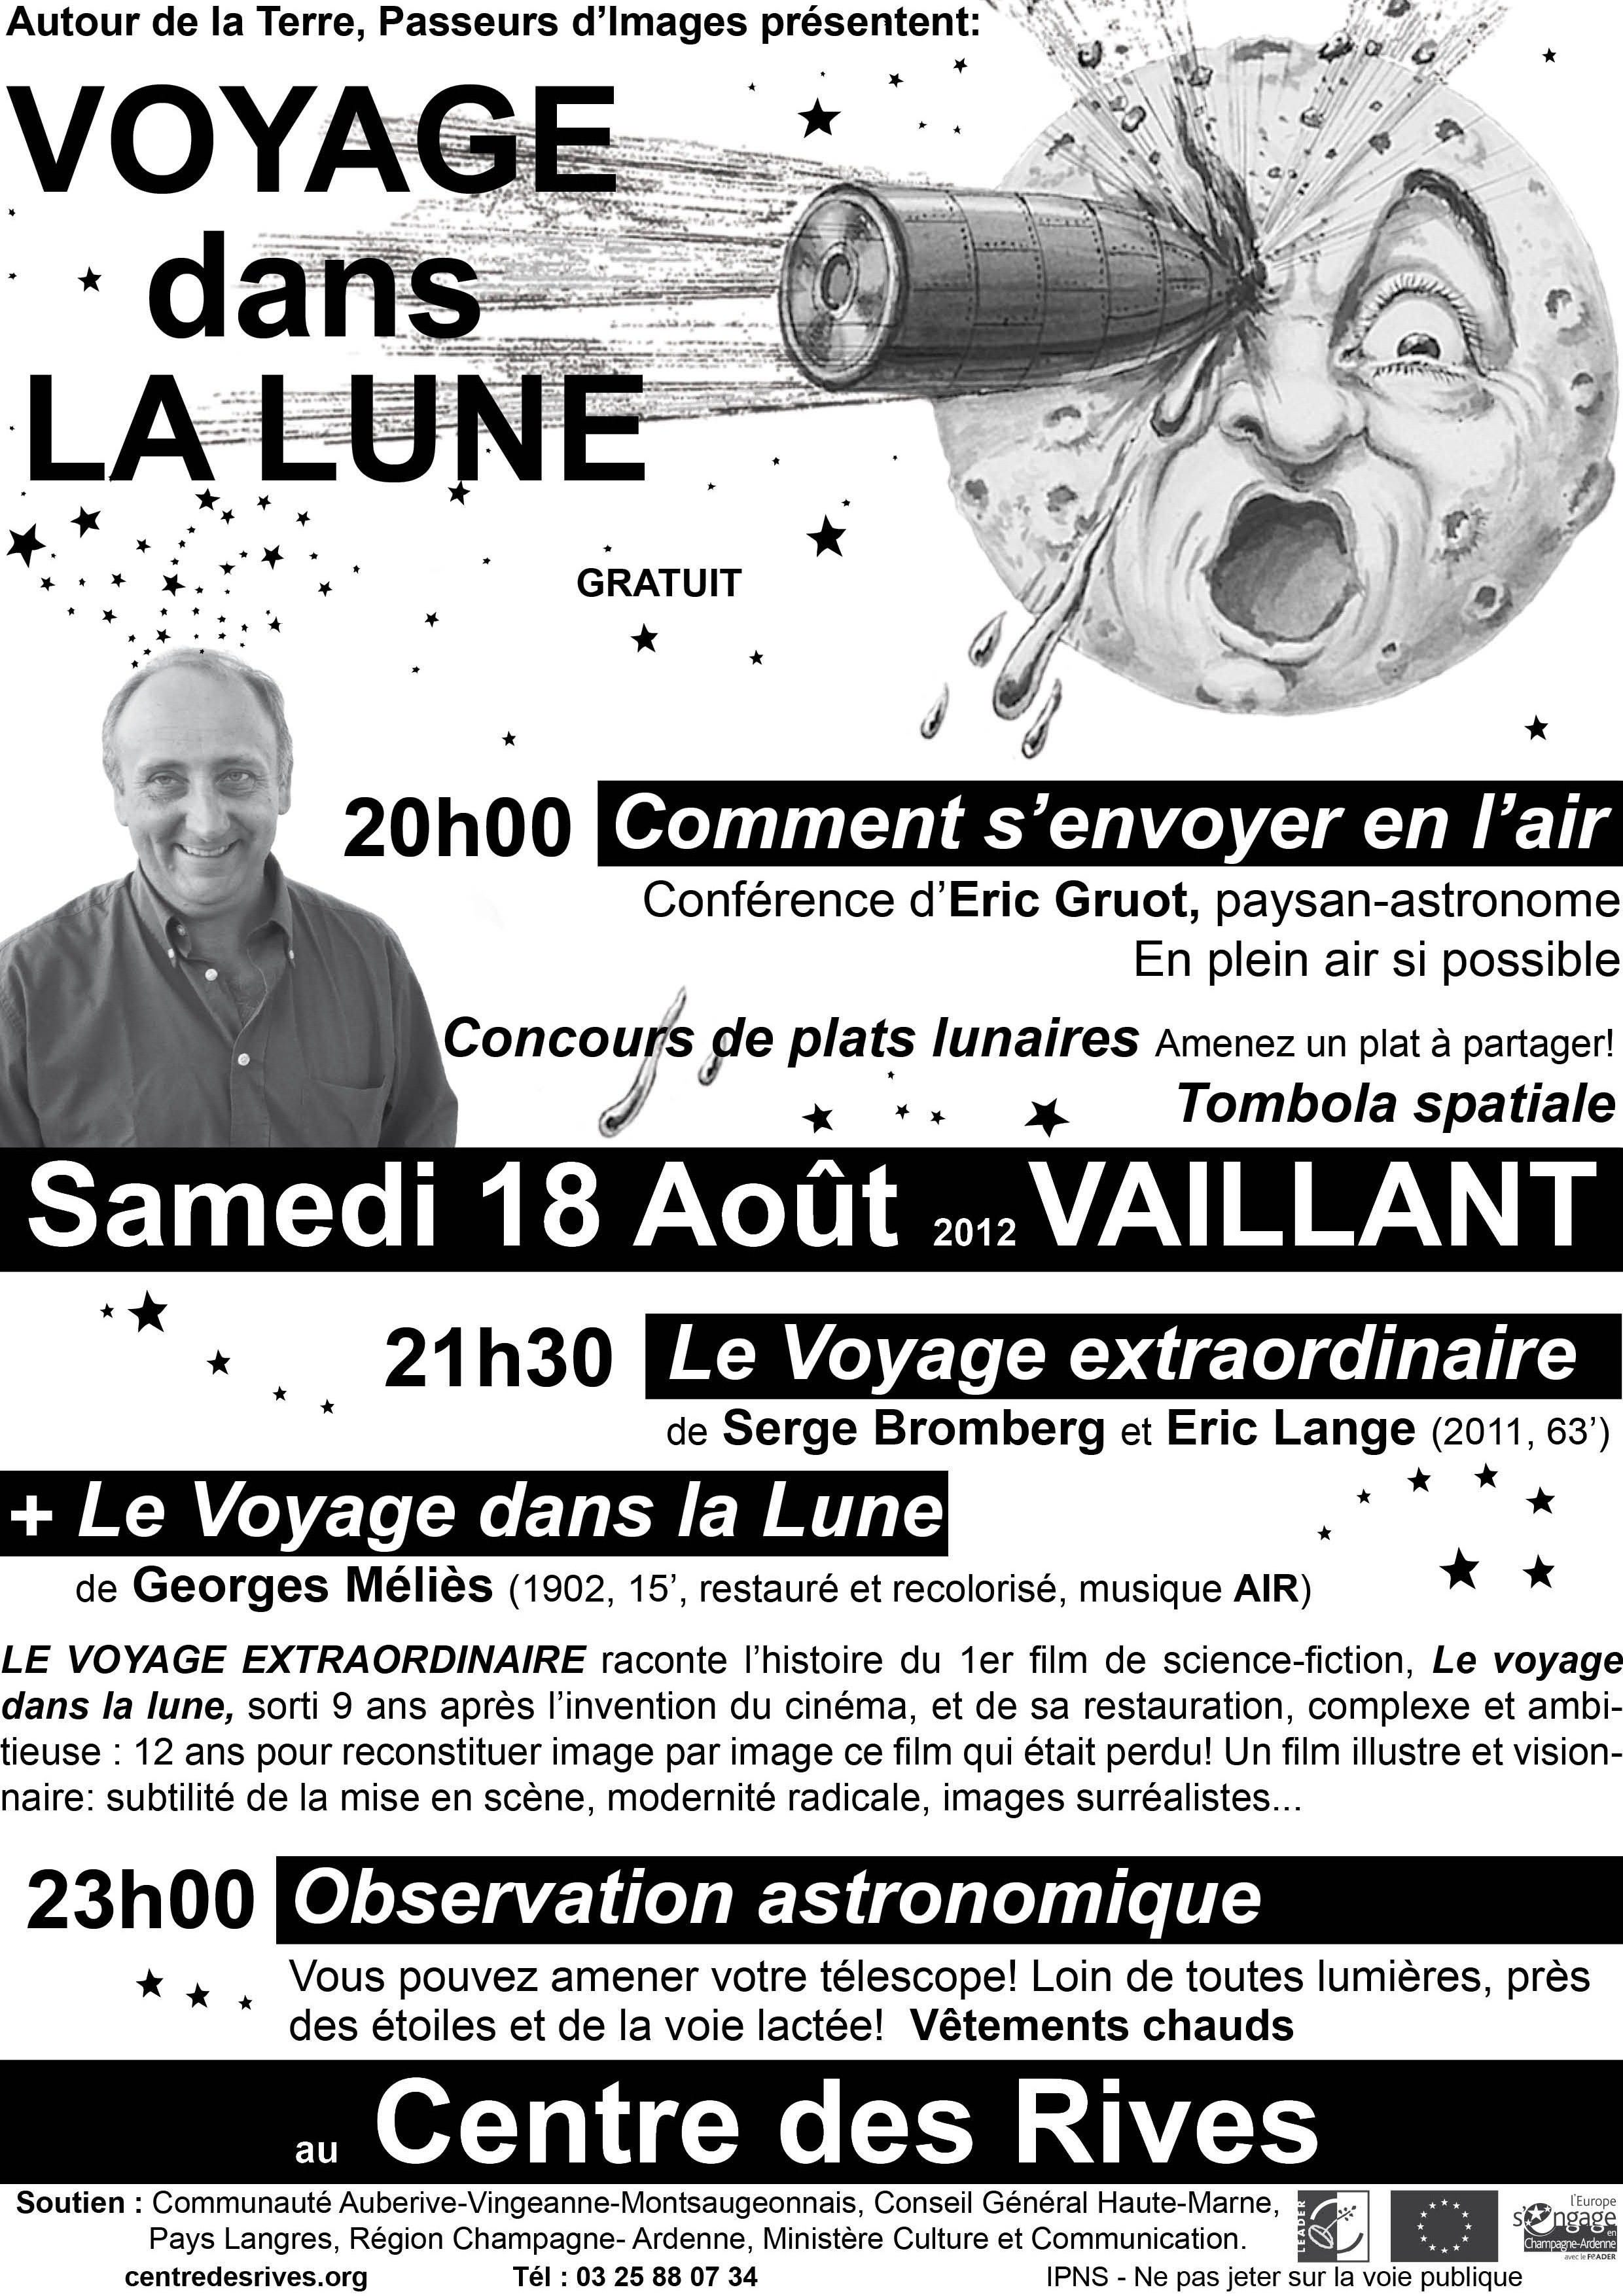 voyage_dans_la_lune_aout_2012_fin